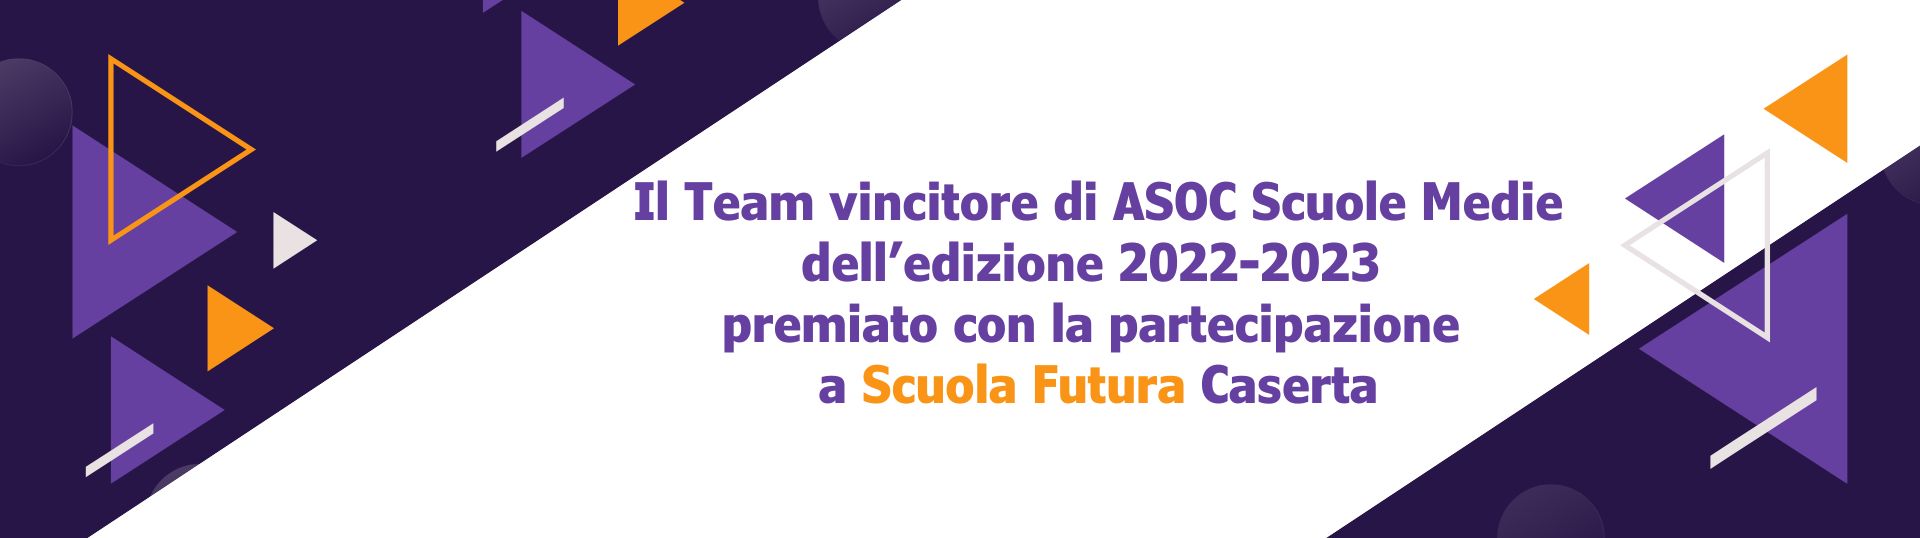 Il team vincitore di ASOC Scuole Medie premiato con Scuola Futura a Caserta